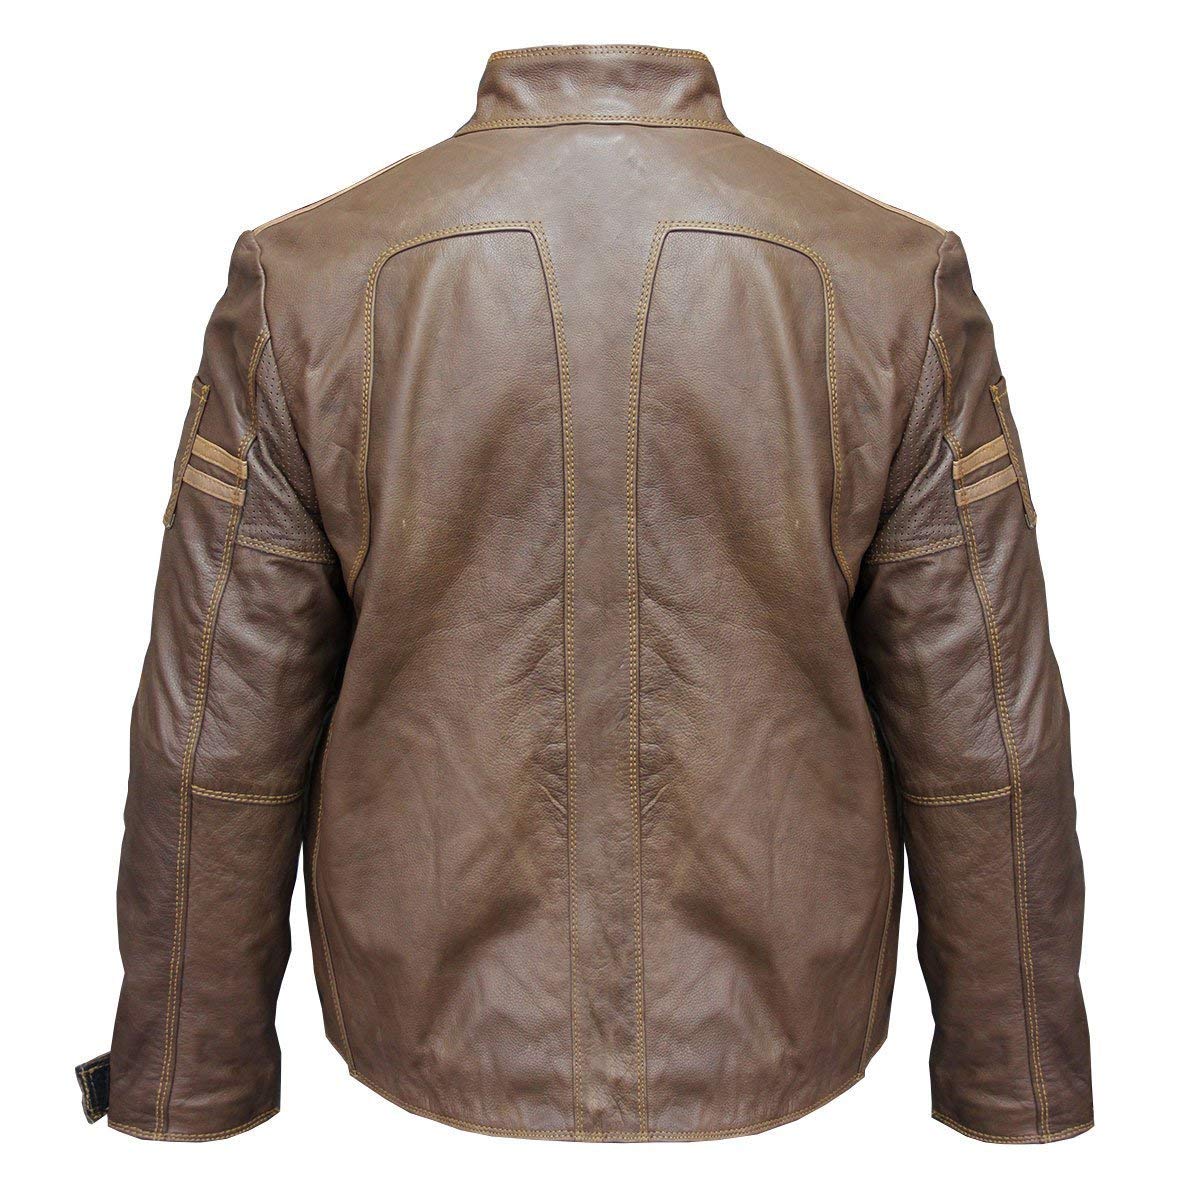 Get Café Racer Brown Distressed Vintage Leather Jacket - RockStar Jacket